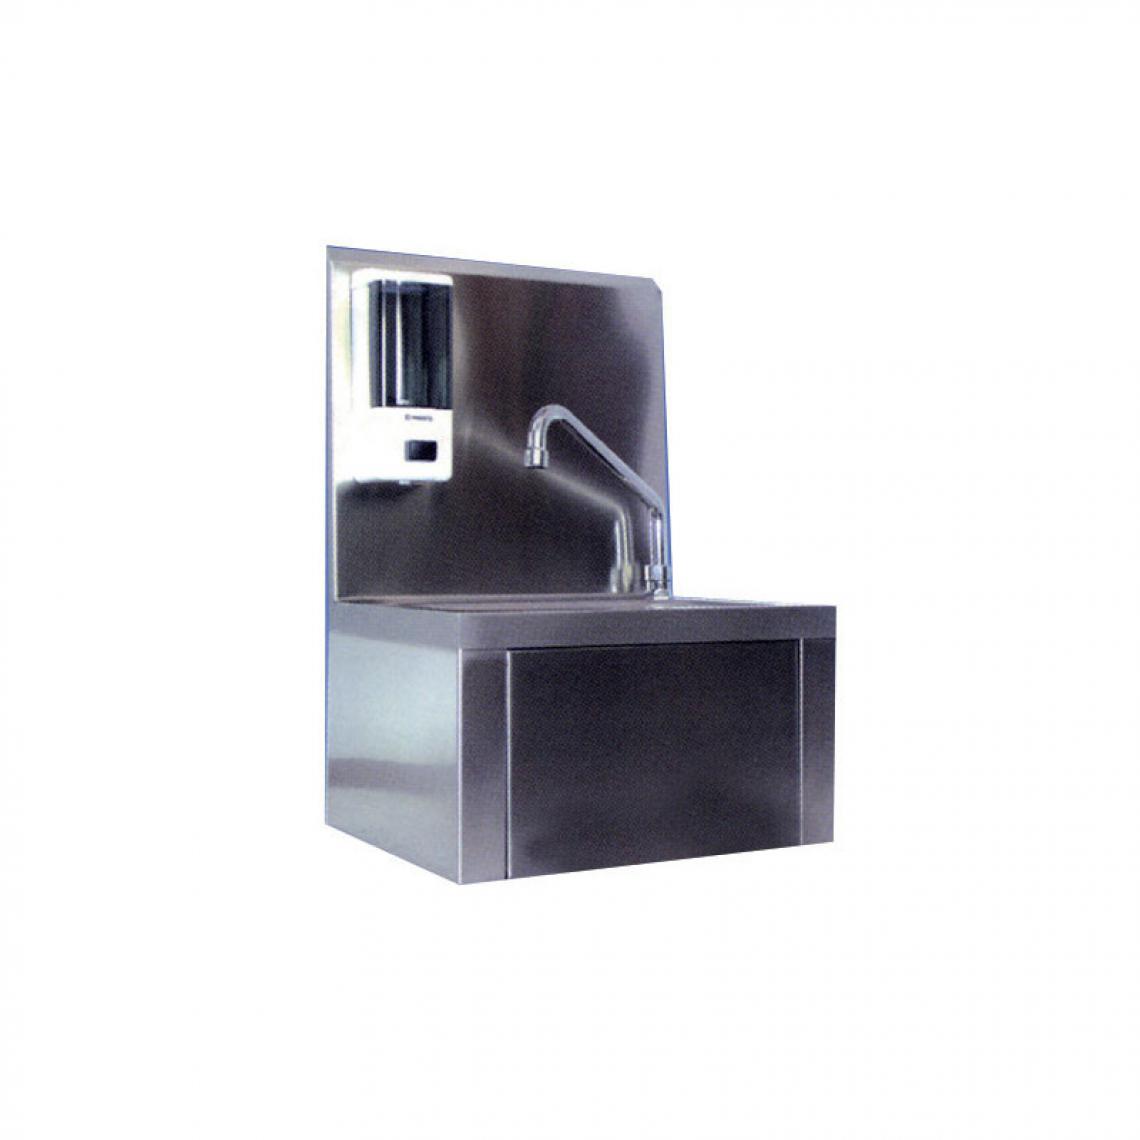 Materiel Chr Pro - Lave Main Série Luxe en Inox avec Porte Savon - - Lave main pour toilettes